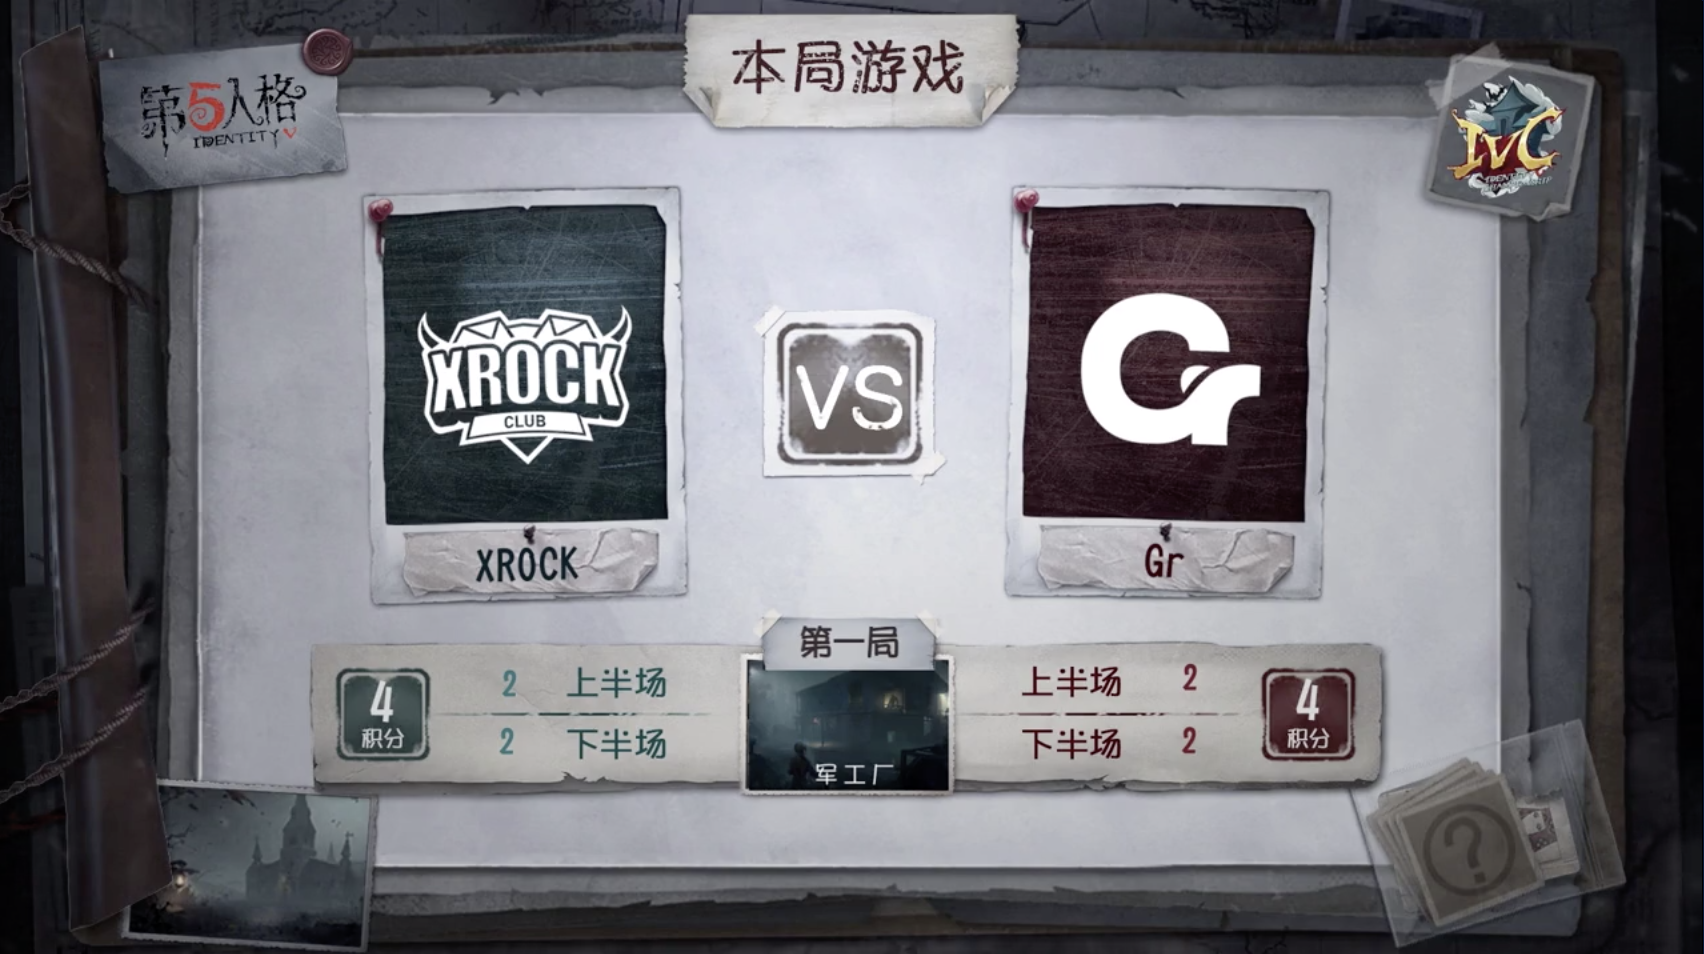 10月19日 XROCK vs Gr小组赛BO3第一局